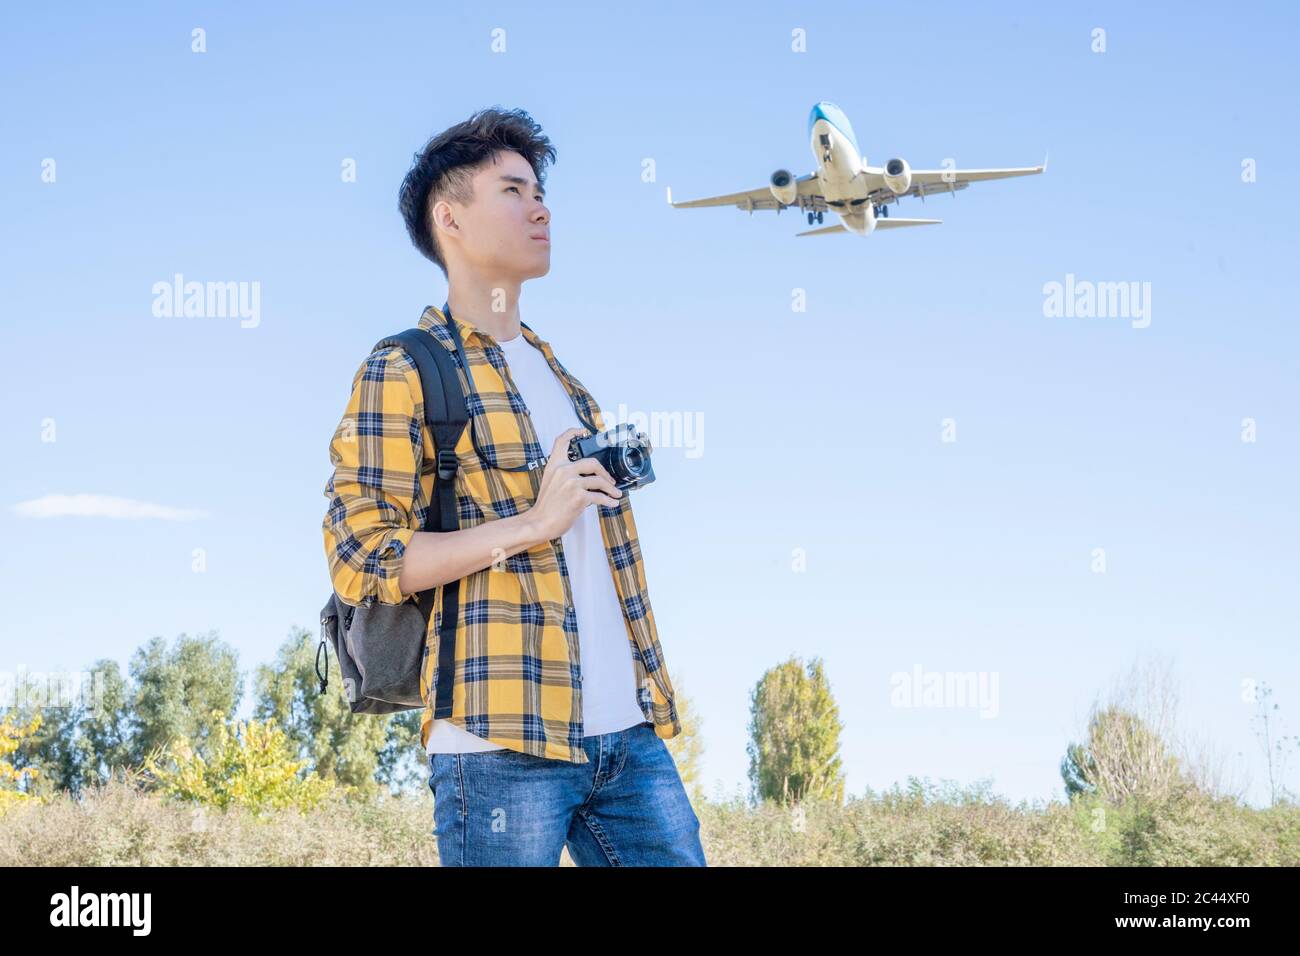 Giovane turista con macchina fotografica in natura con aereo sopra di lui Foto Stock